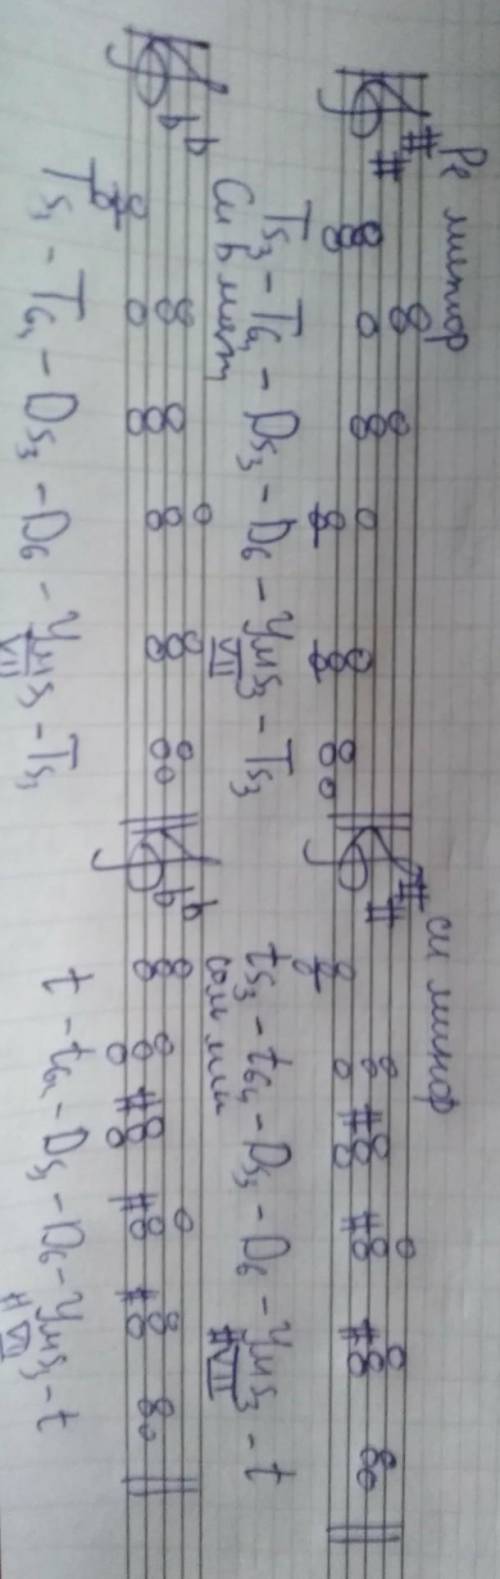 Написать цепочки аккордов в тональностях с 2 знаками: T5/3-T6/4- D5/3-D6- ум5/3- Т